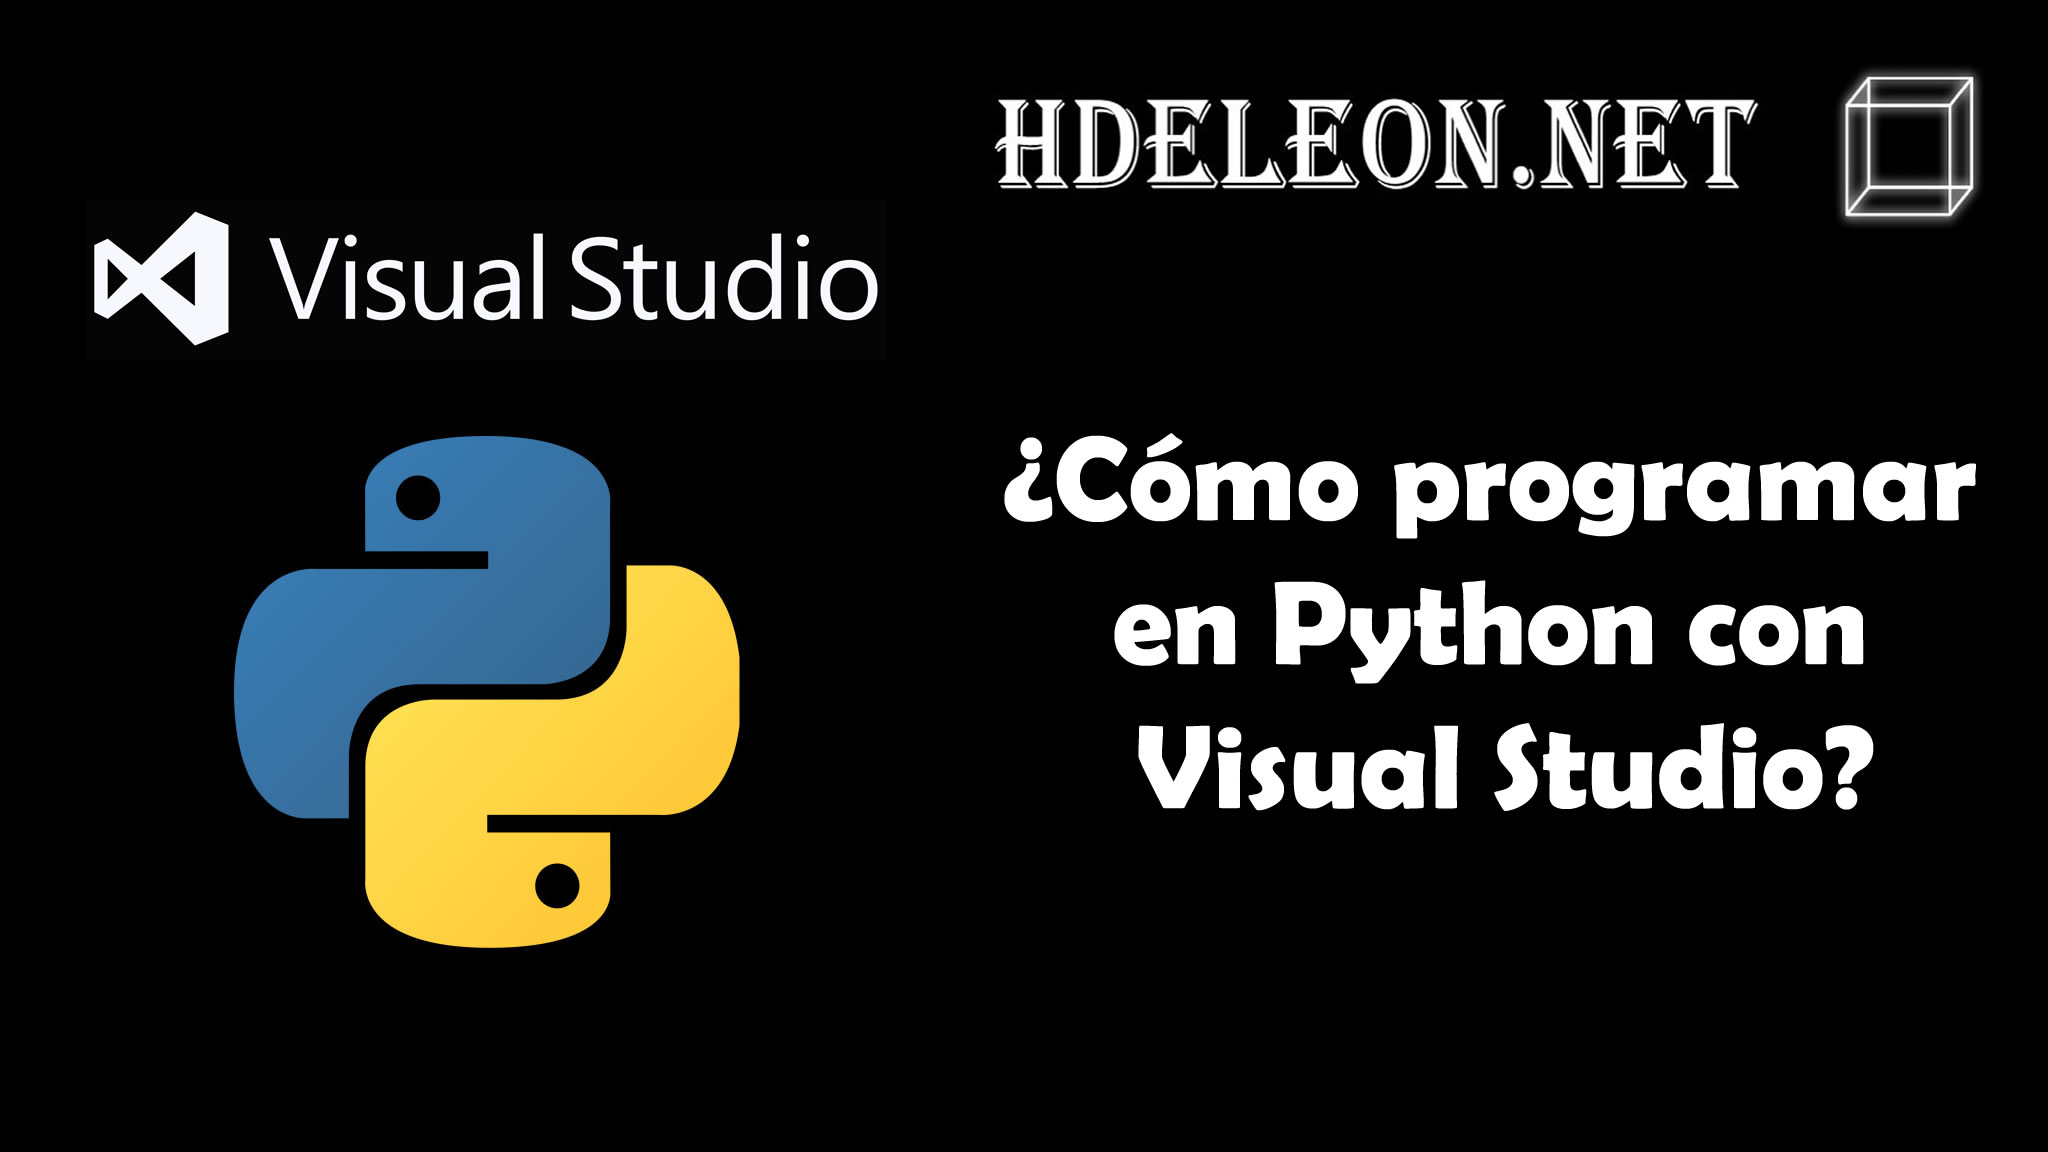 ¿Cómo programar en Python con Visual Studio?, Instalación de herramientas